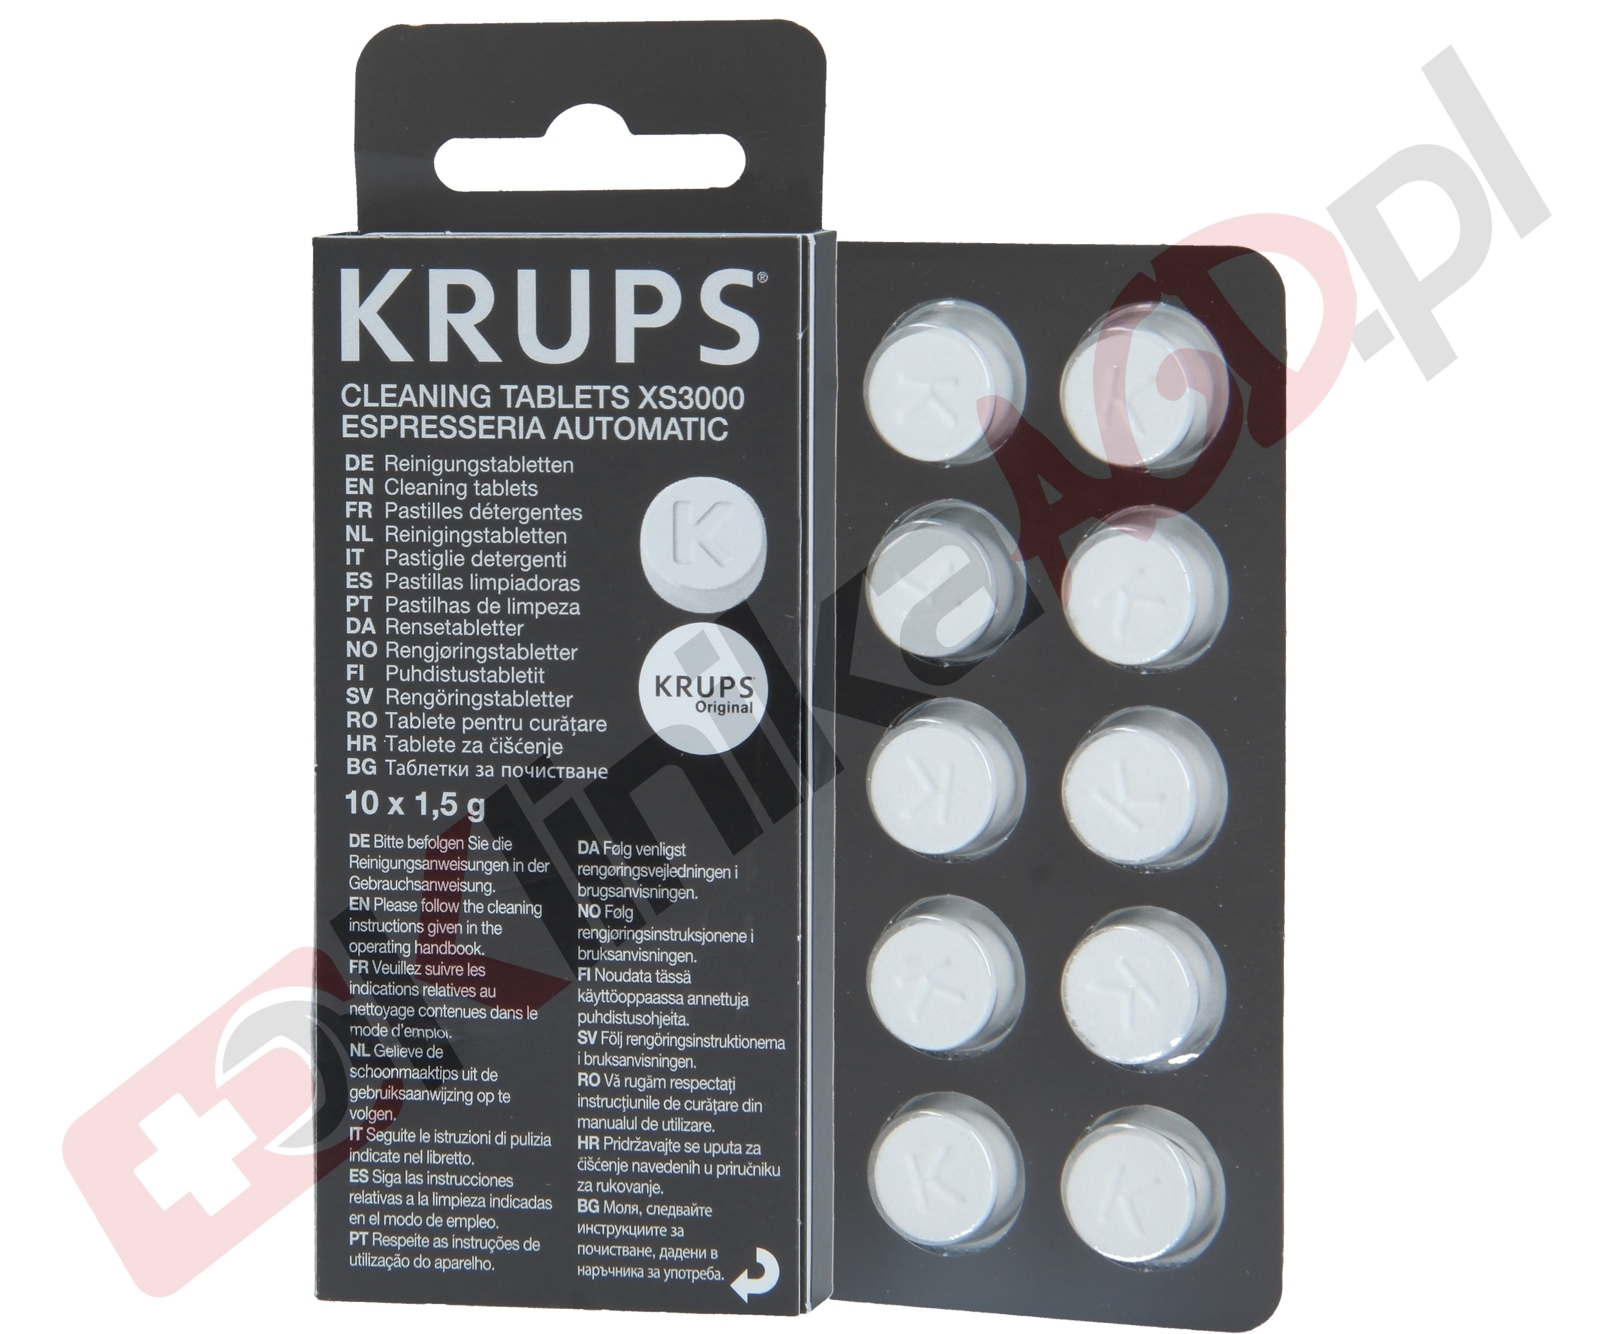 ⛑ XS300010 Tabletki czyszczące Krups XS3000 do ekspresu, 10szt 1.5g